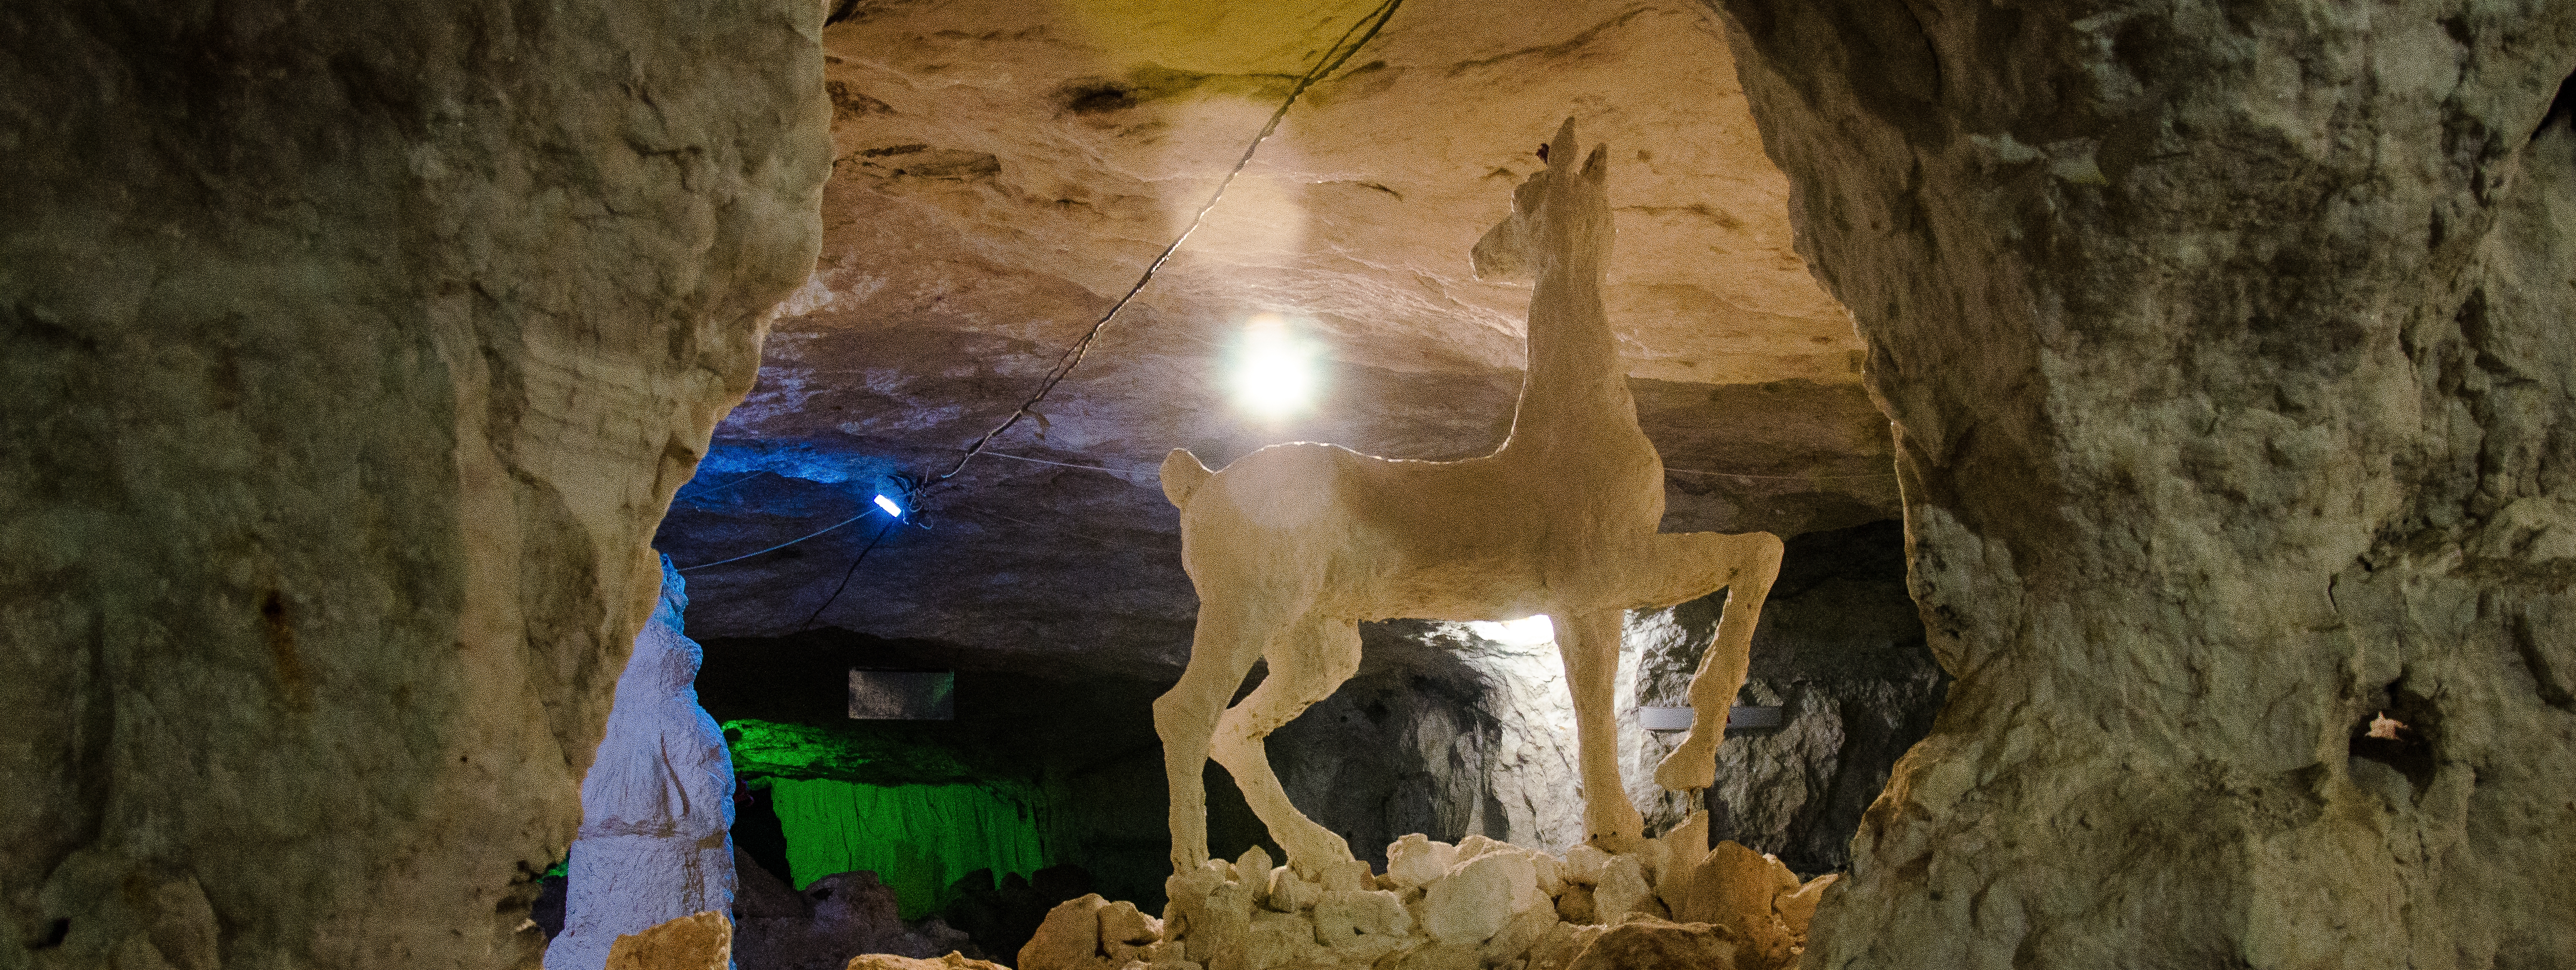 Подземный музей горного дела, геологии и спелеологии